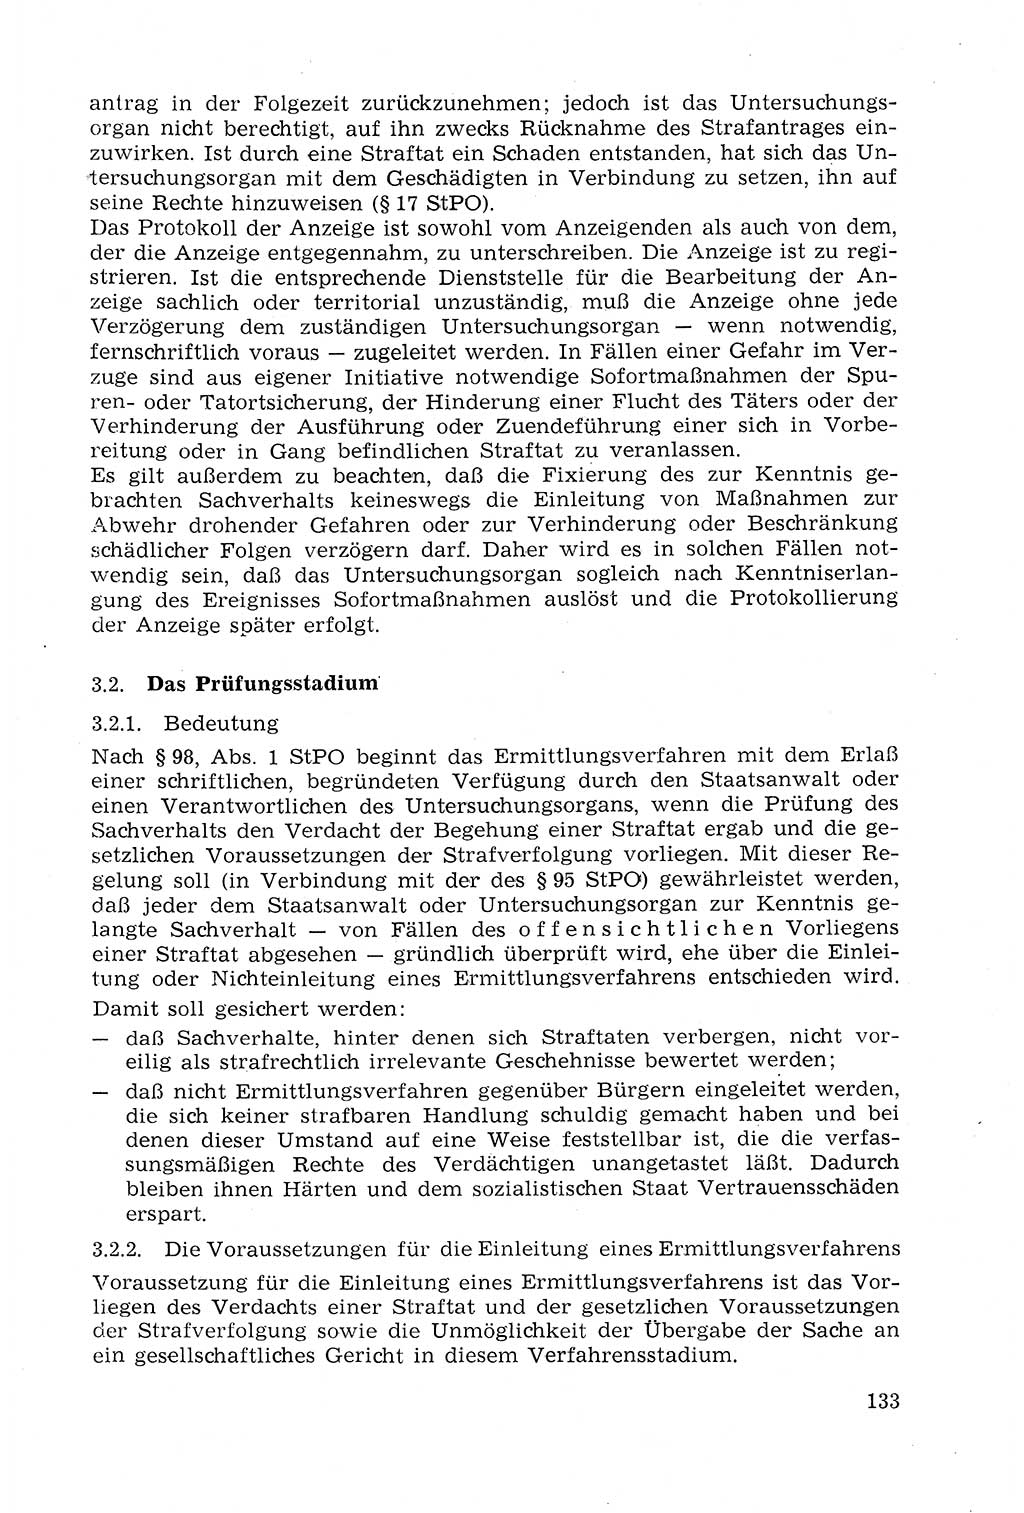 Strafprozeßrecht der DDR (Deutsche Demokratische Republik), Lehrmaterial 1969, Seite 133 (Strafprozeßr. DDR Lehrmat. 1969, S. 133)